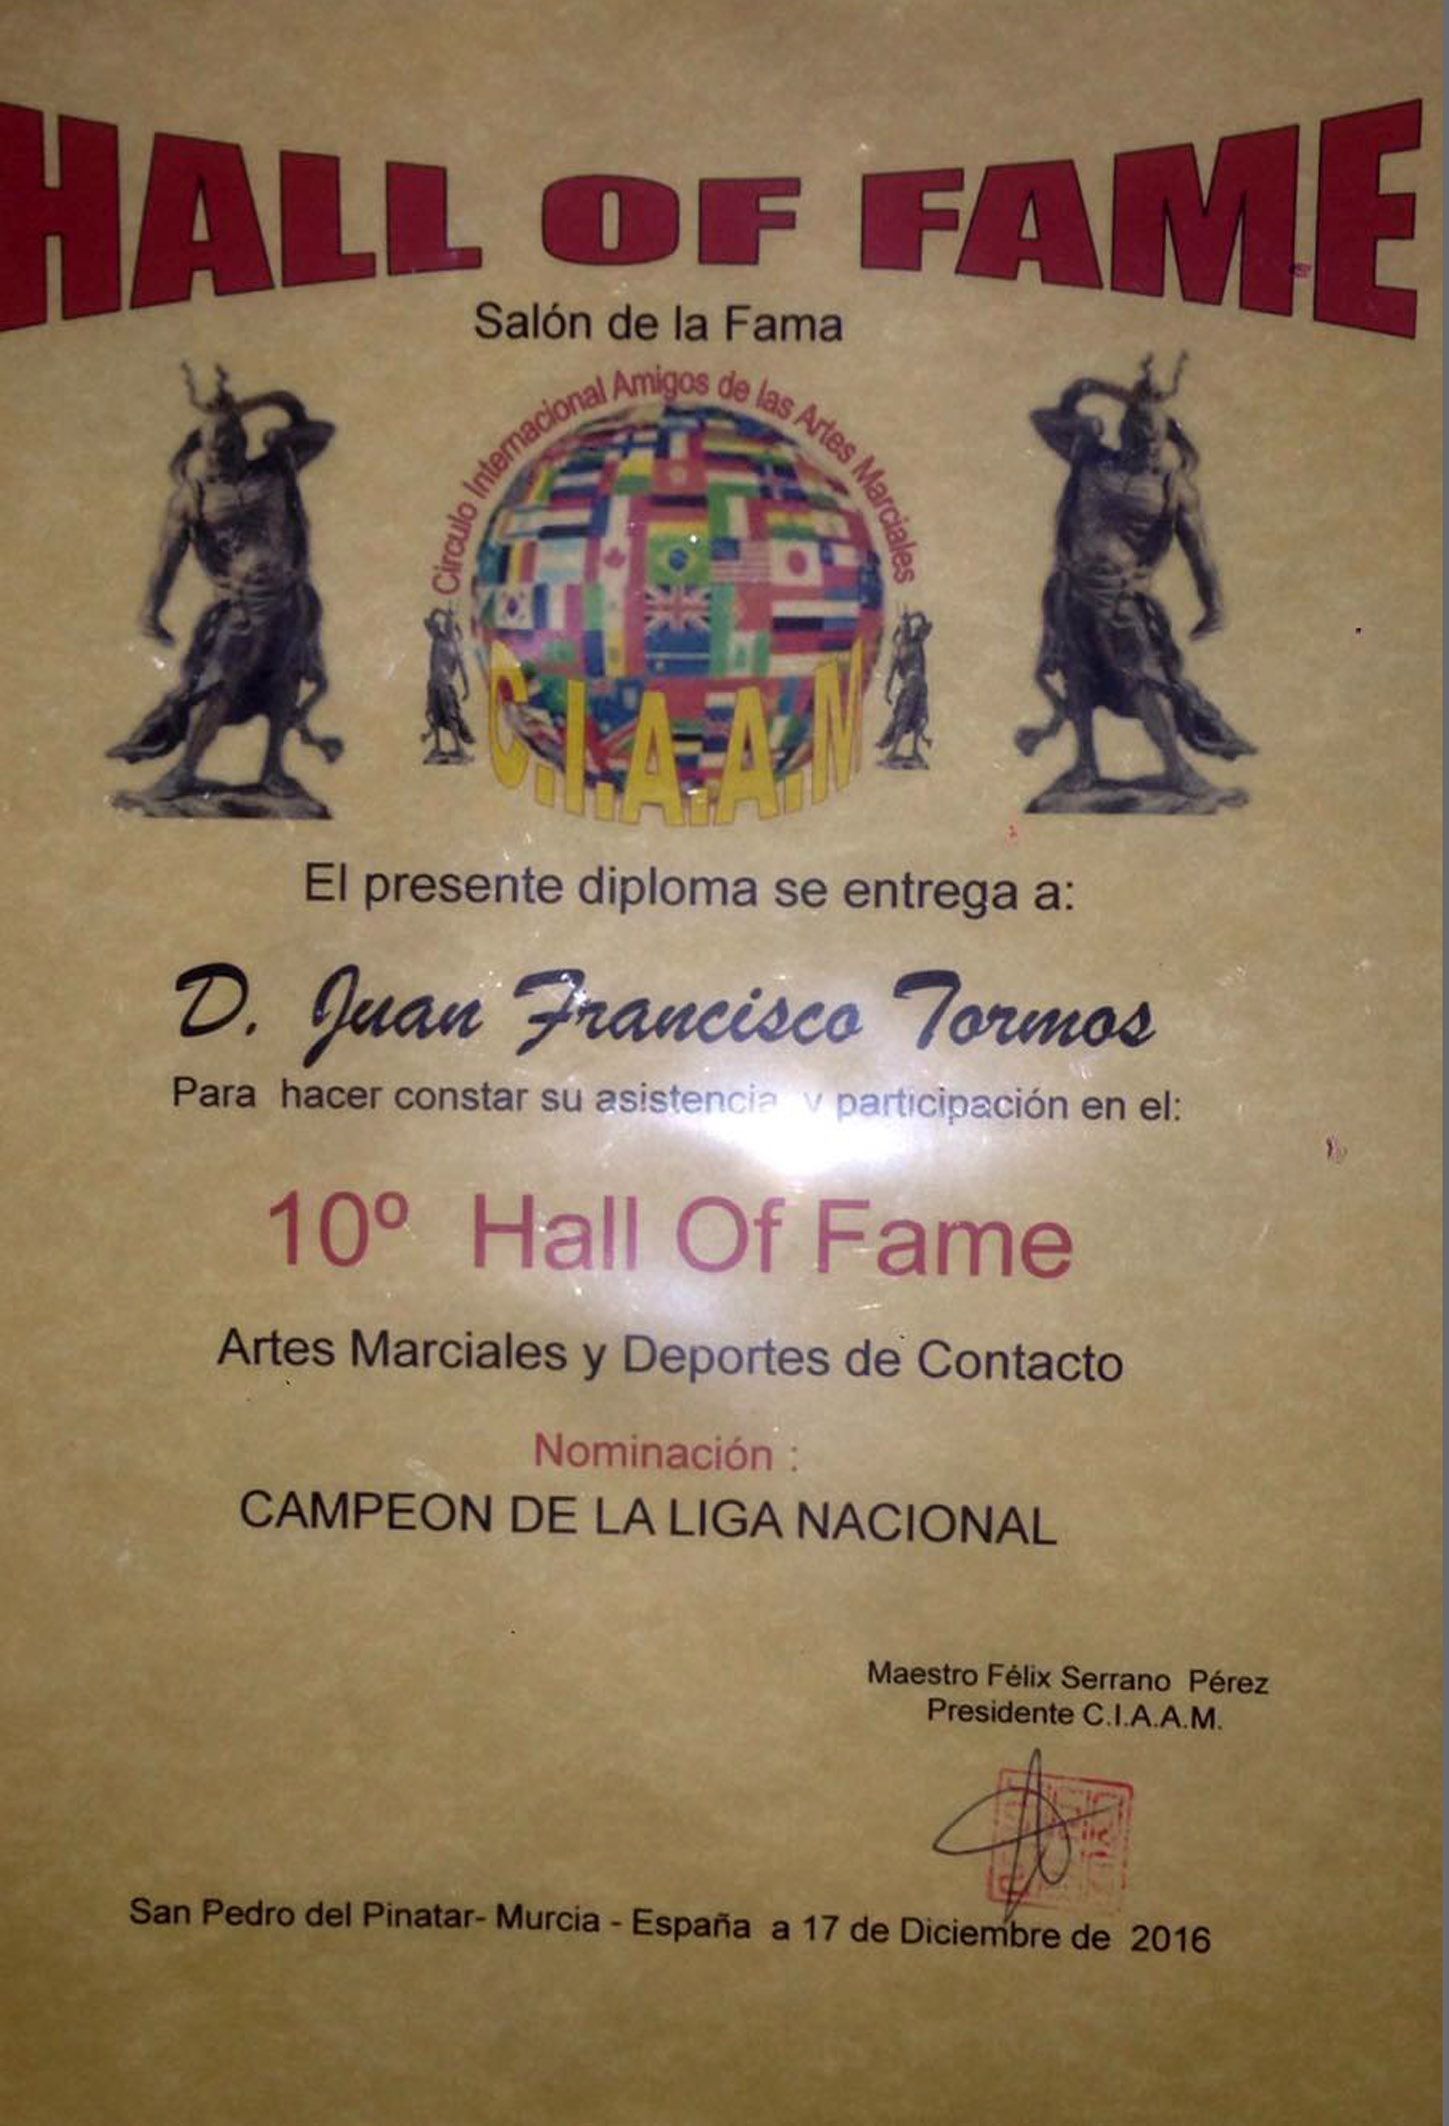 El torreño Juan Francisco Tormos entra en el Salón de la Fama del Círculo Internacional de Amigos de las Artes Marciales3